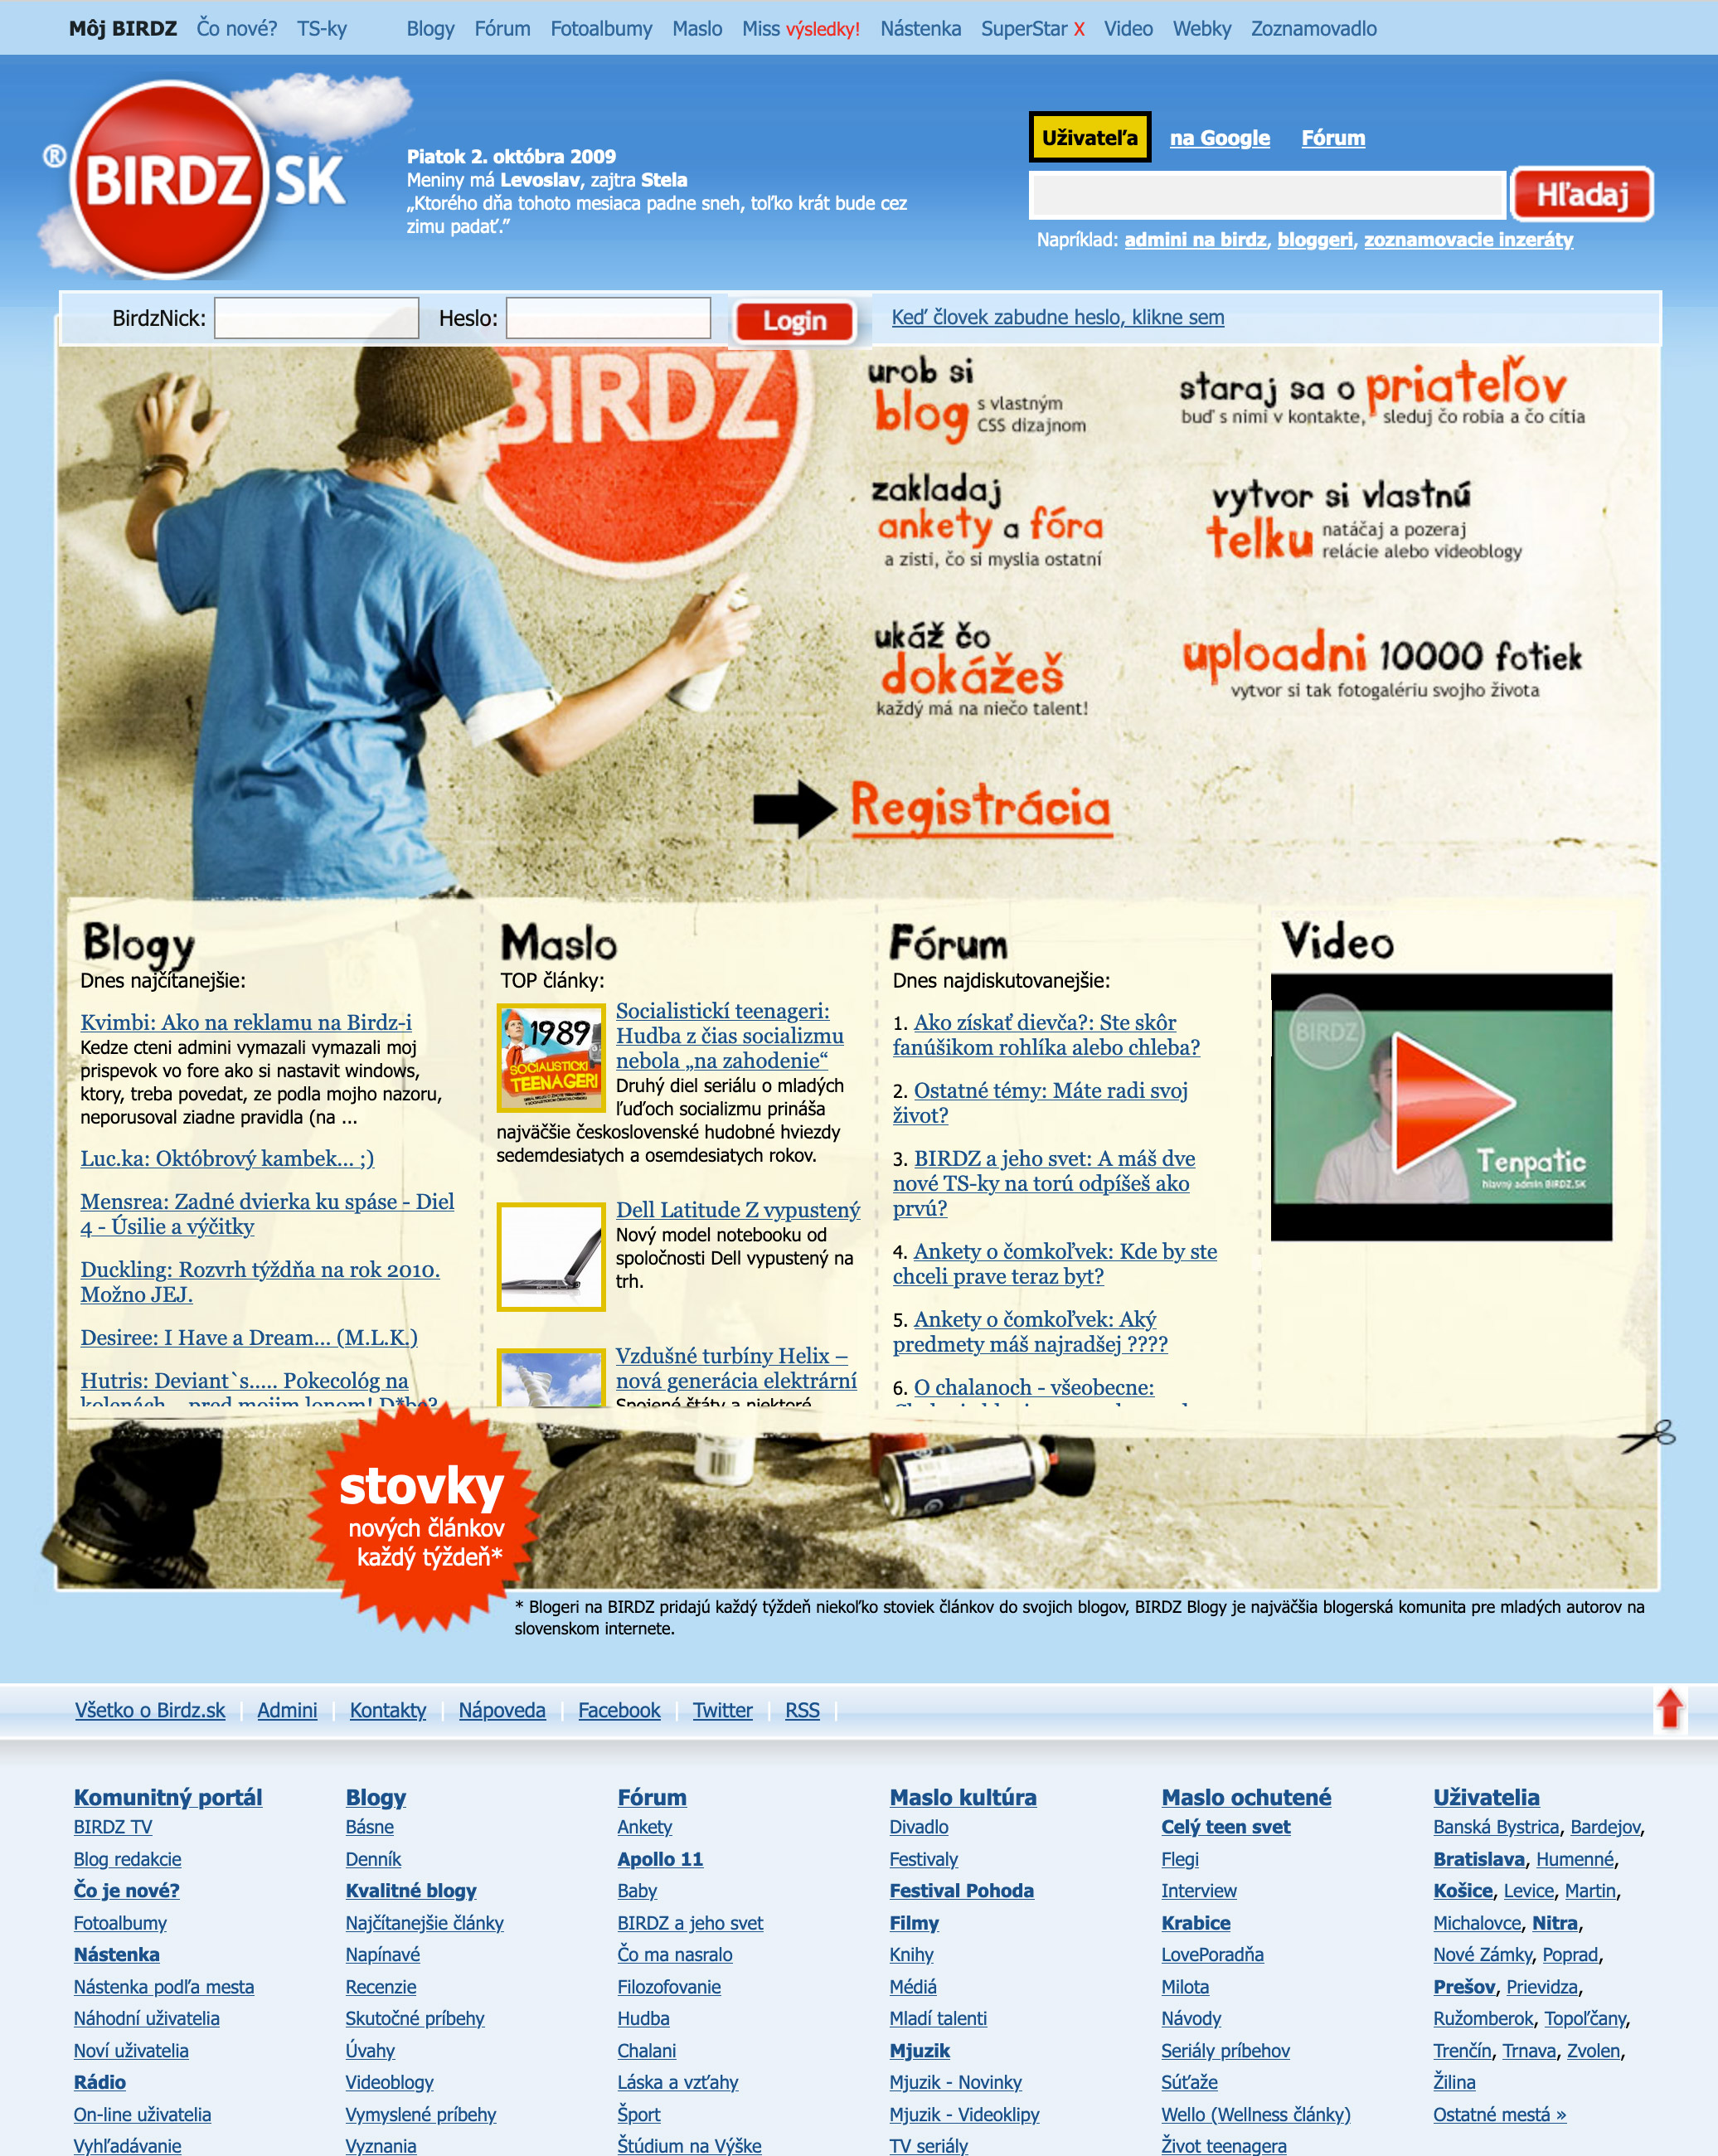 Dizajn BIRDZ.SK v roku 2009